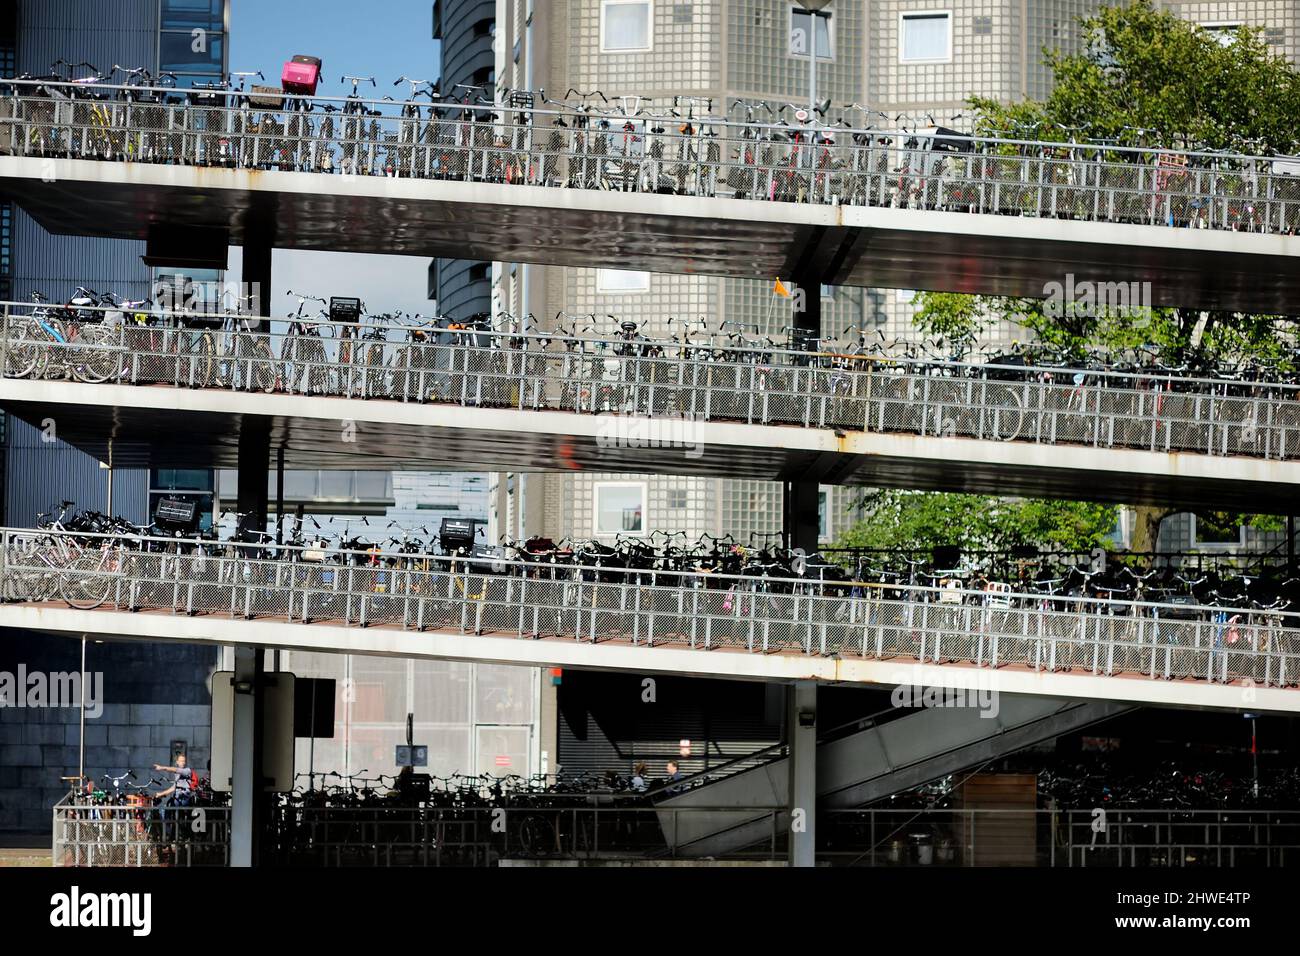 AMSTERDAM - AUGUST 2011: Viele Fahrräder auf einem mehrstöckigen Fahrradparkplatz in Amsterdam, Niederlande. Parken eines Fahrrads in mehrstöckigen Fahrrads Stockfoto